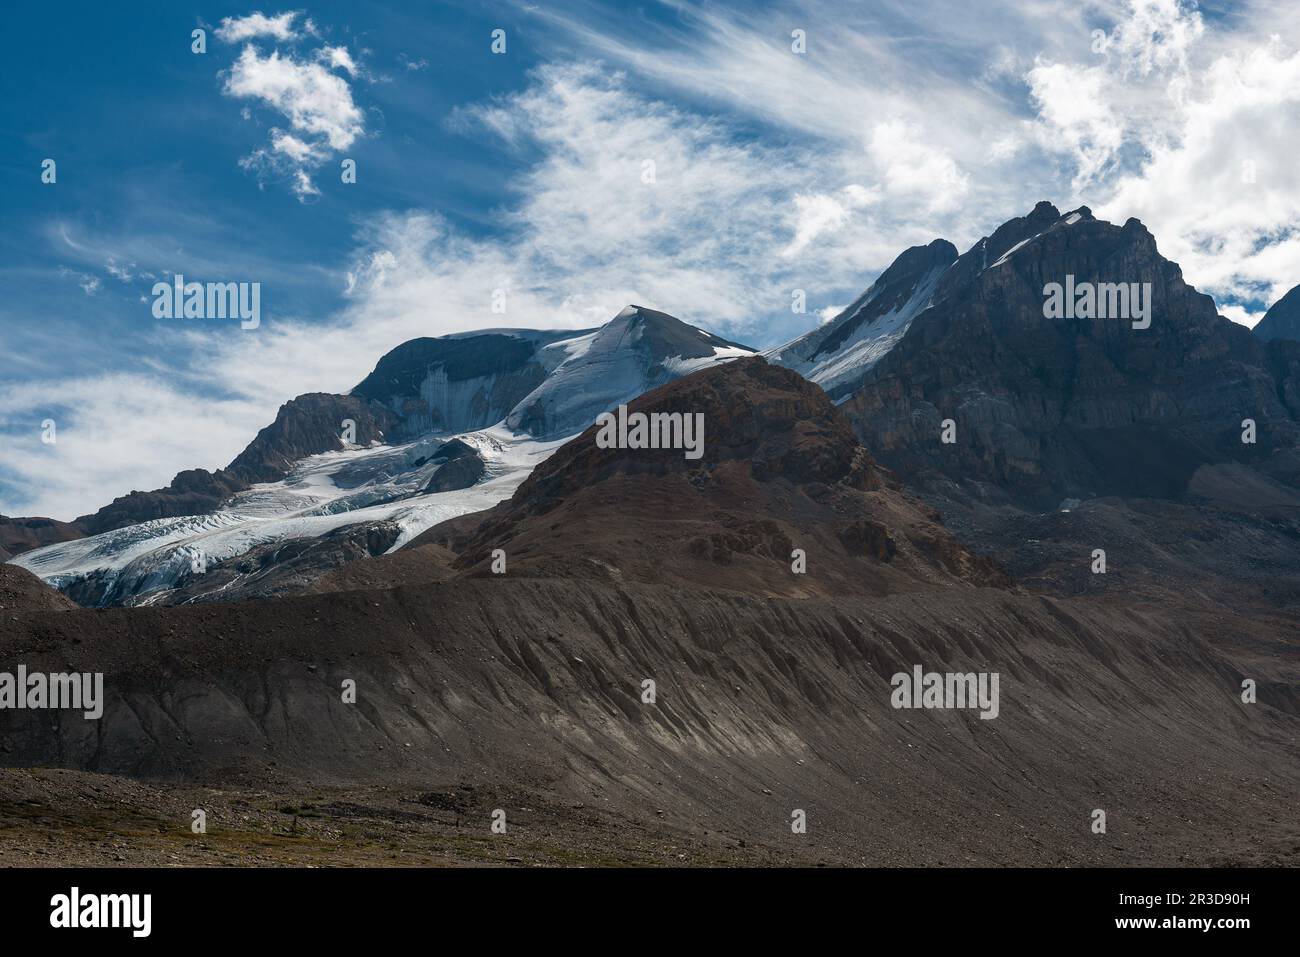 Pico de la montaña fronteriza por el glaciar Athabasca, el parque nacional Jasper, las Montañas Rocosas Canadienses, Canadá. Foto de stock